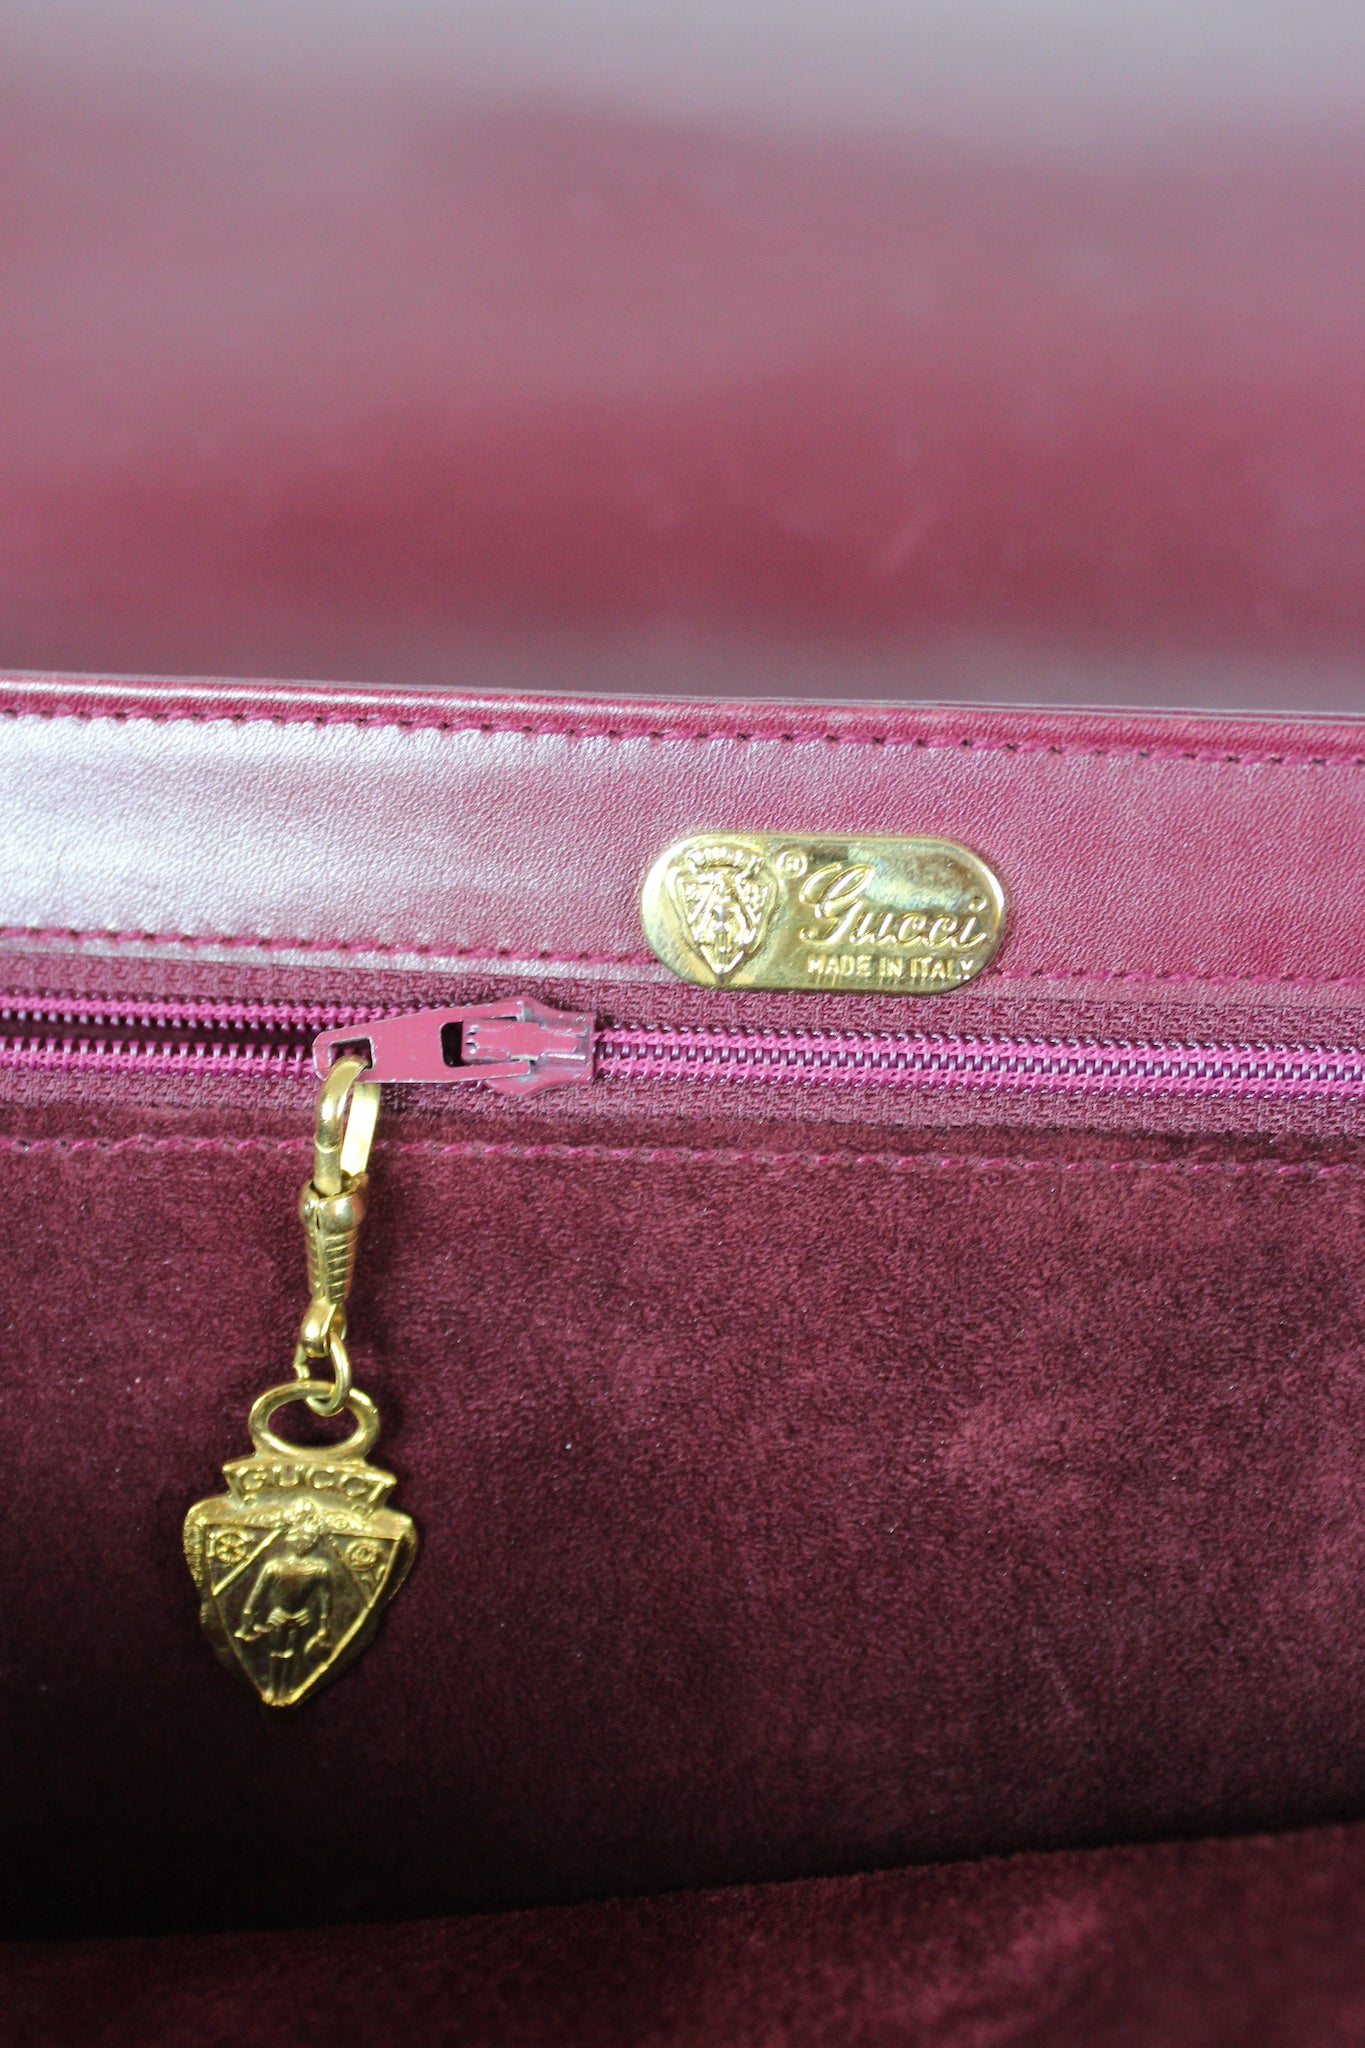 Gucci Messenger Burgundy Leather Shoulder Bag Vintage 1980s